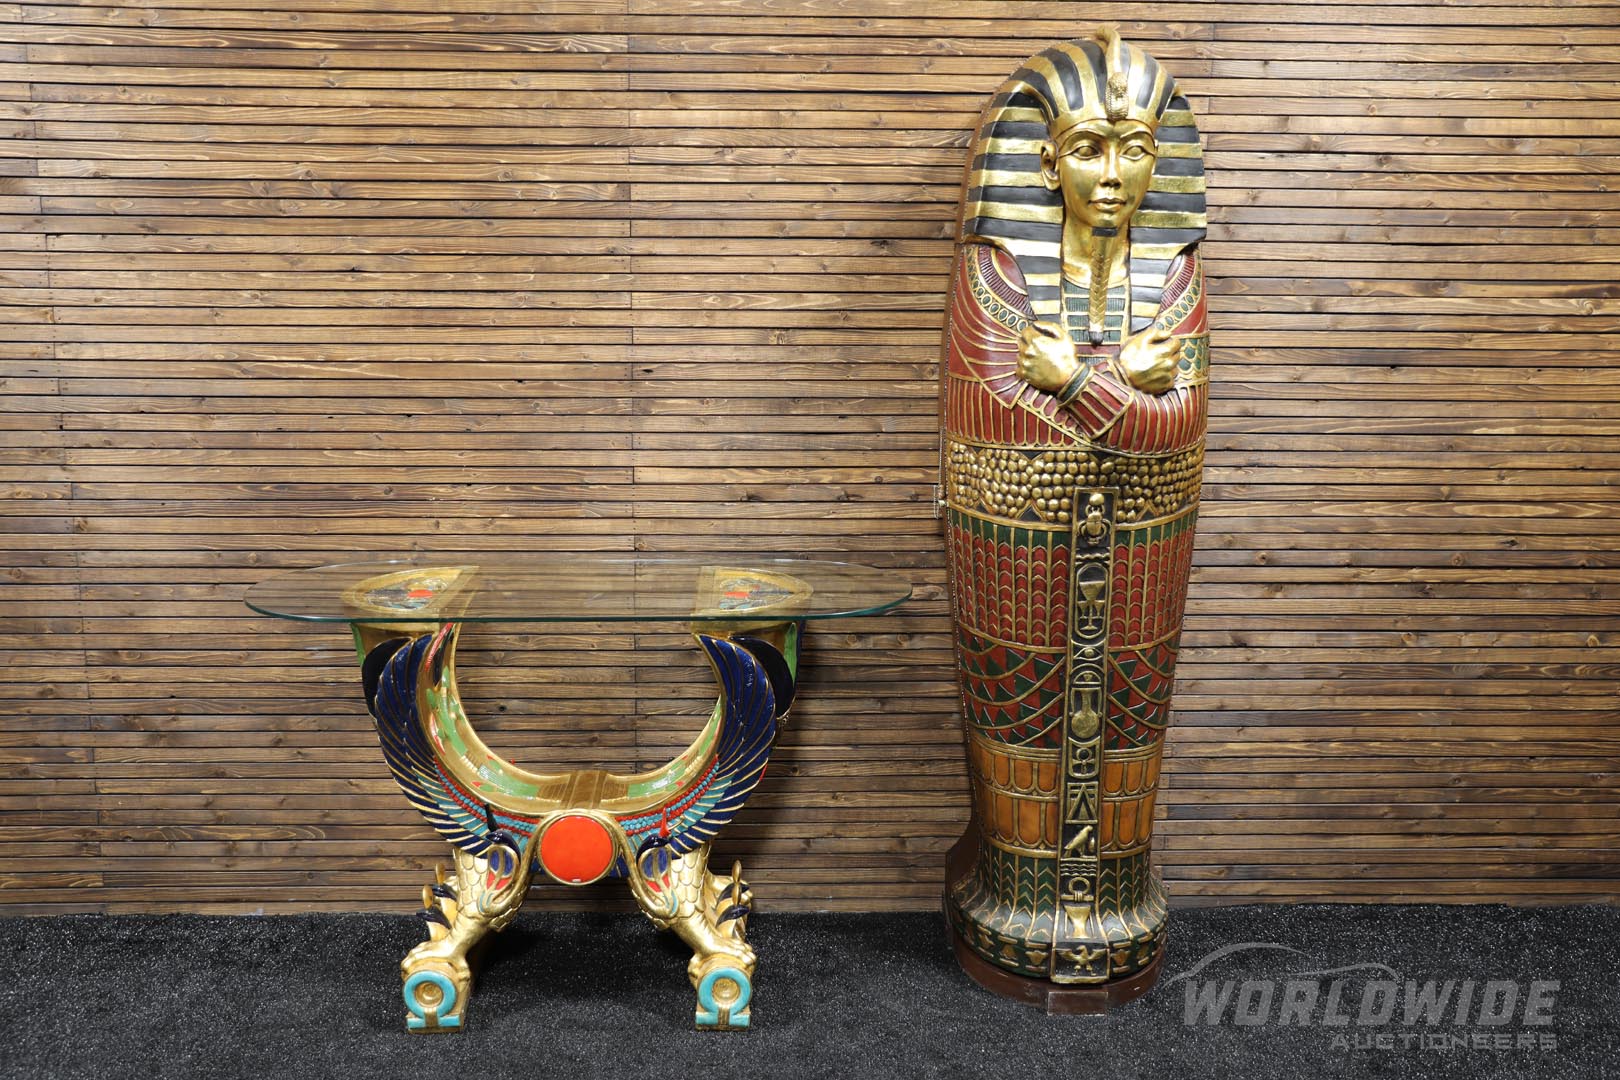  King Tut Sarcophagus & Matchin g Egyptian-Style Table 